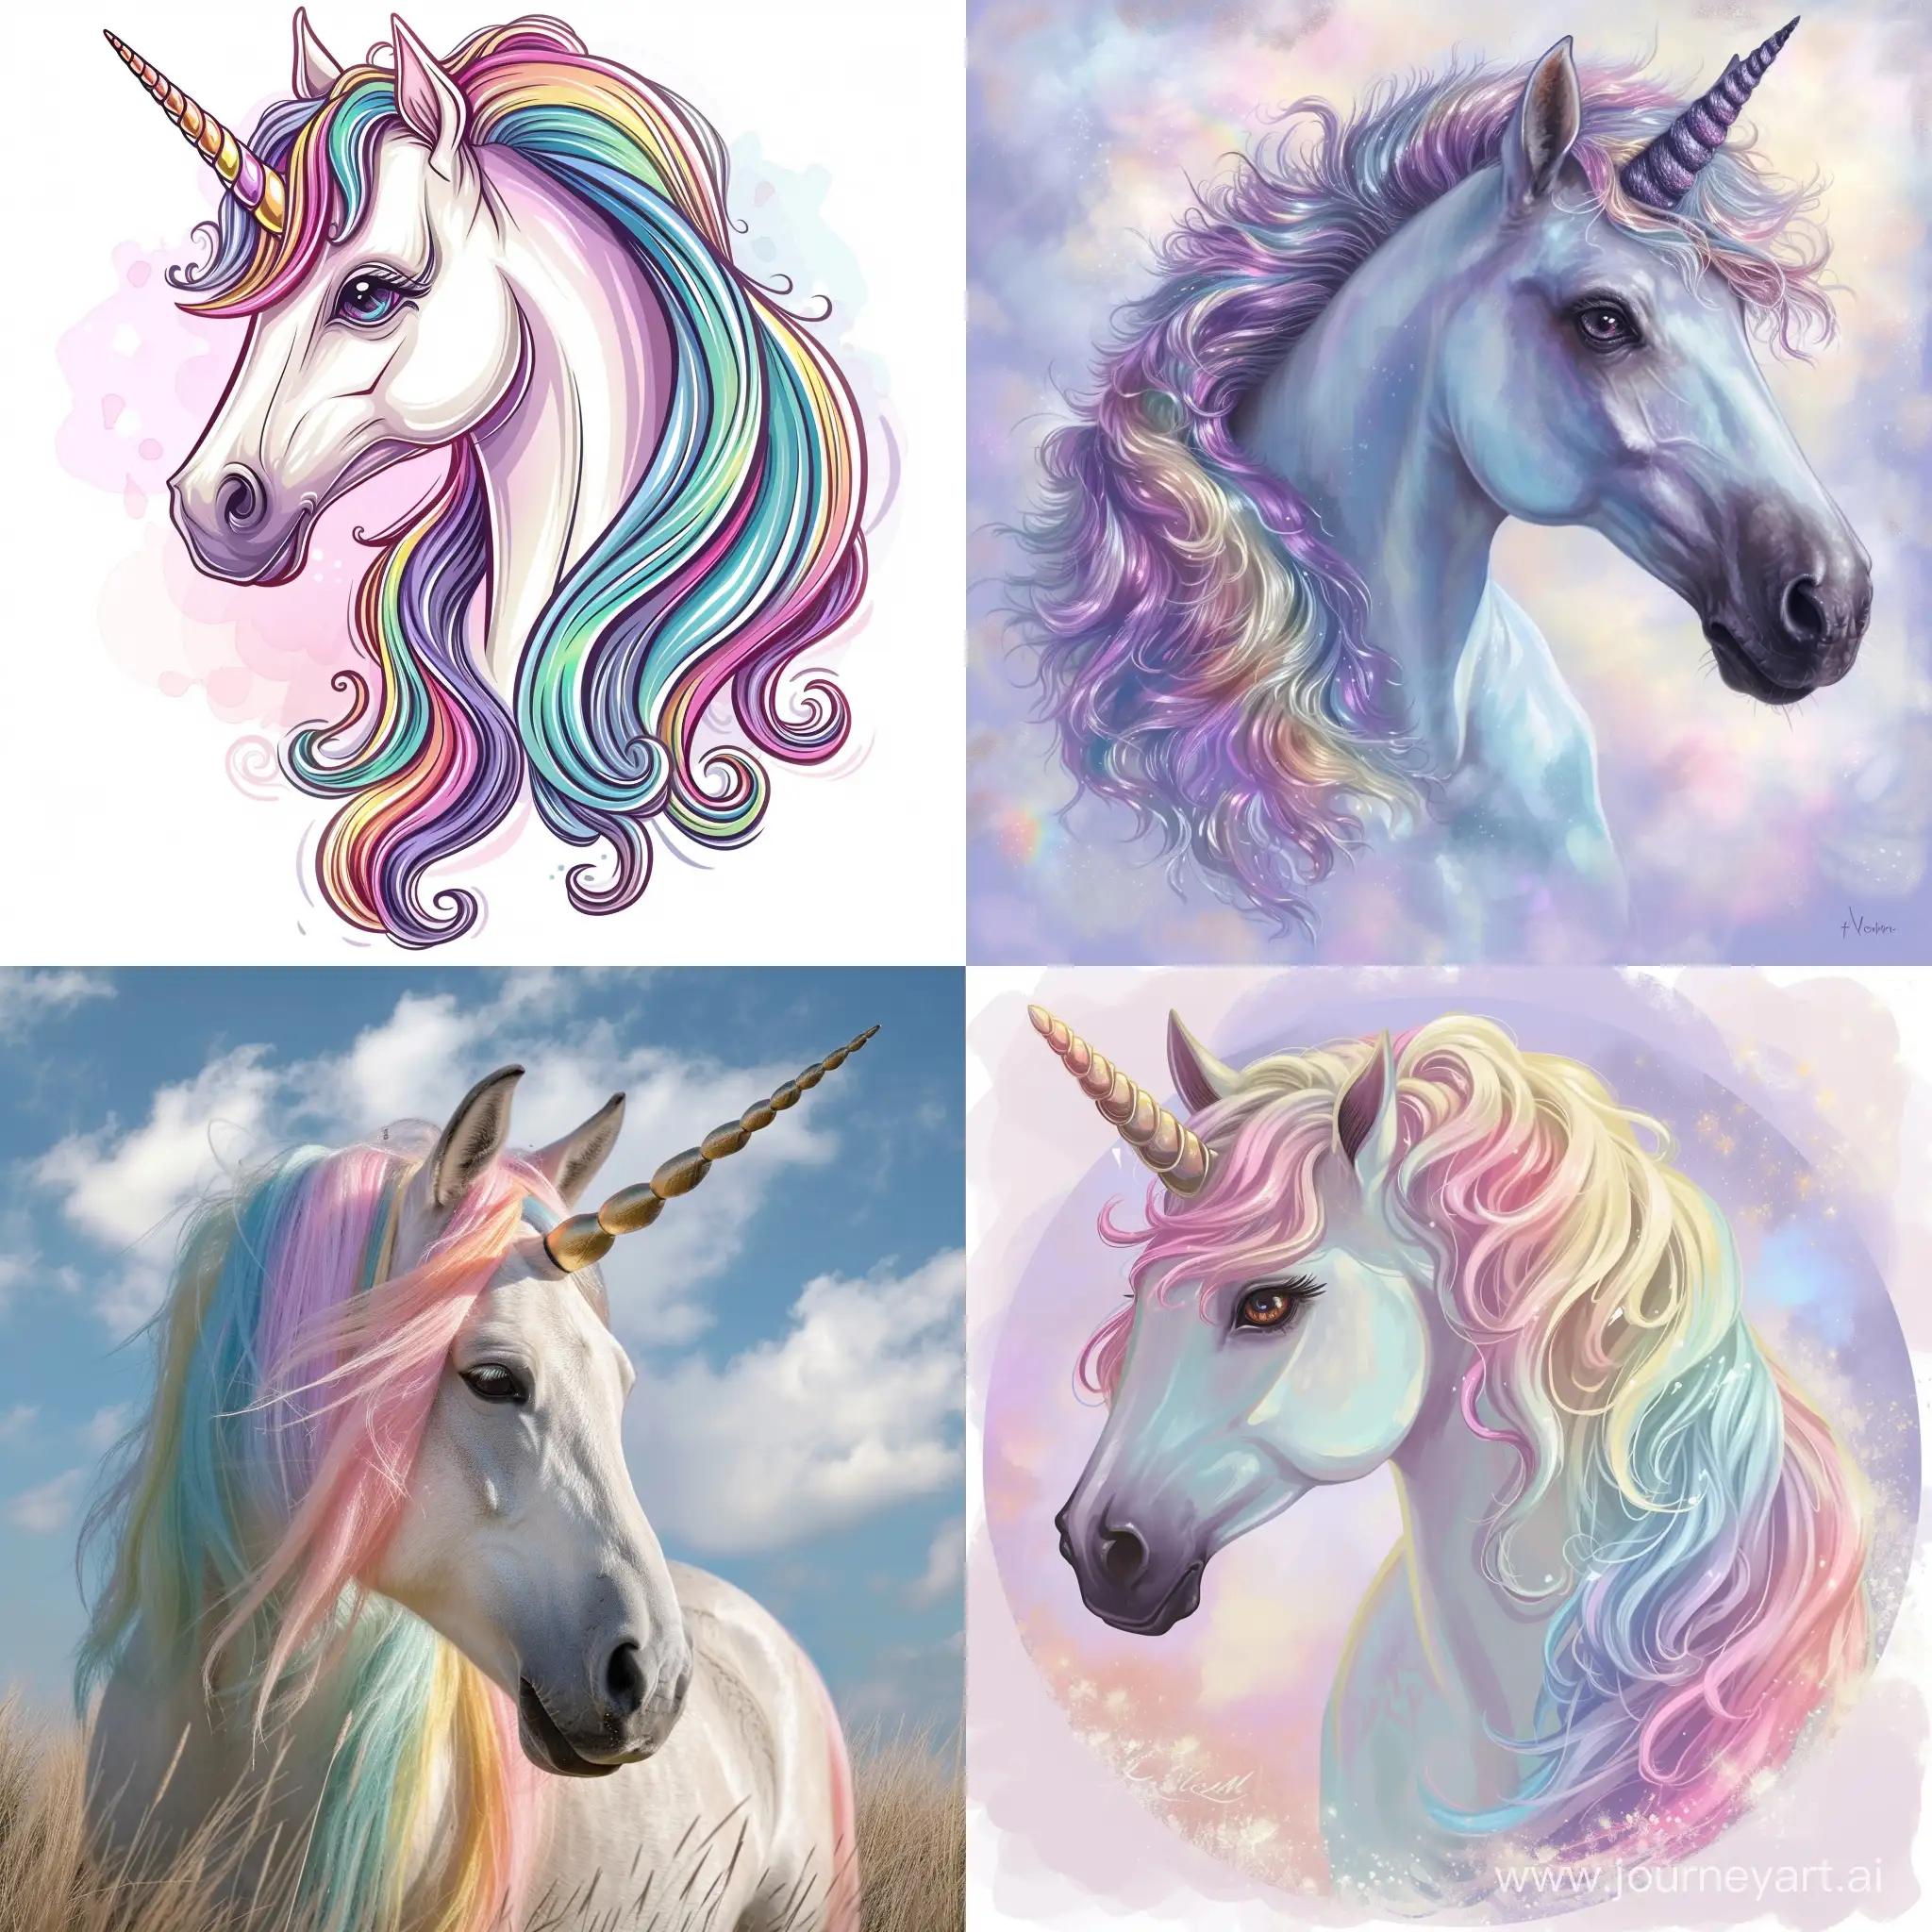 Enchanting-Unicorn-with-Vibrant-Rainbow-Mane-Whimsical-Fantasy-Art